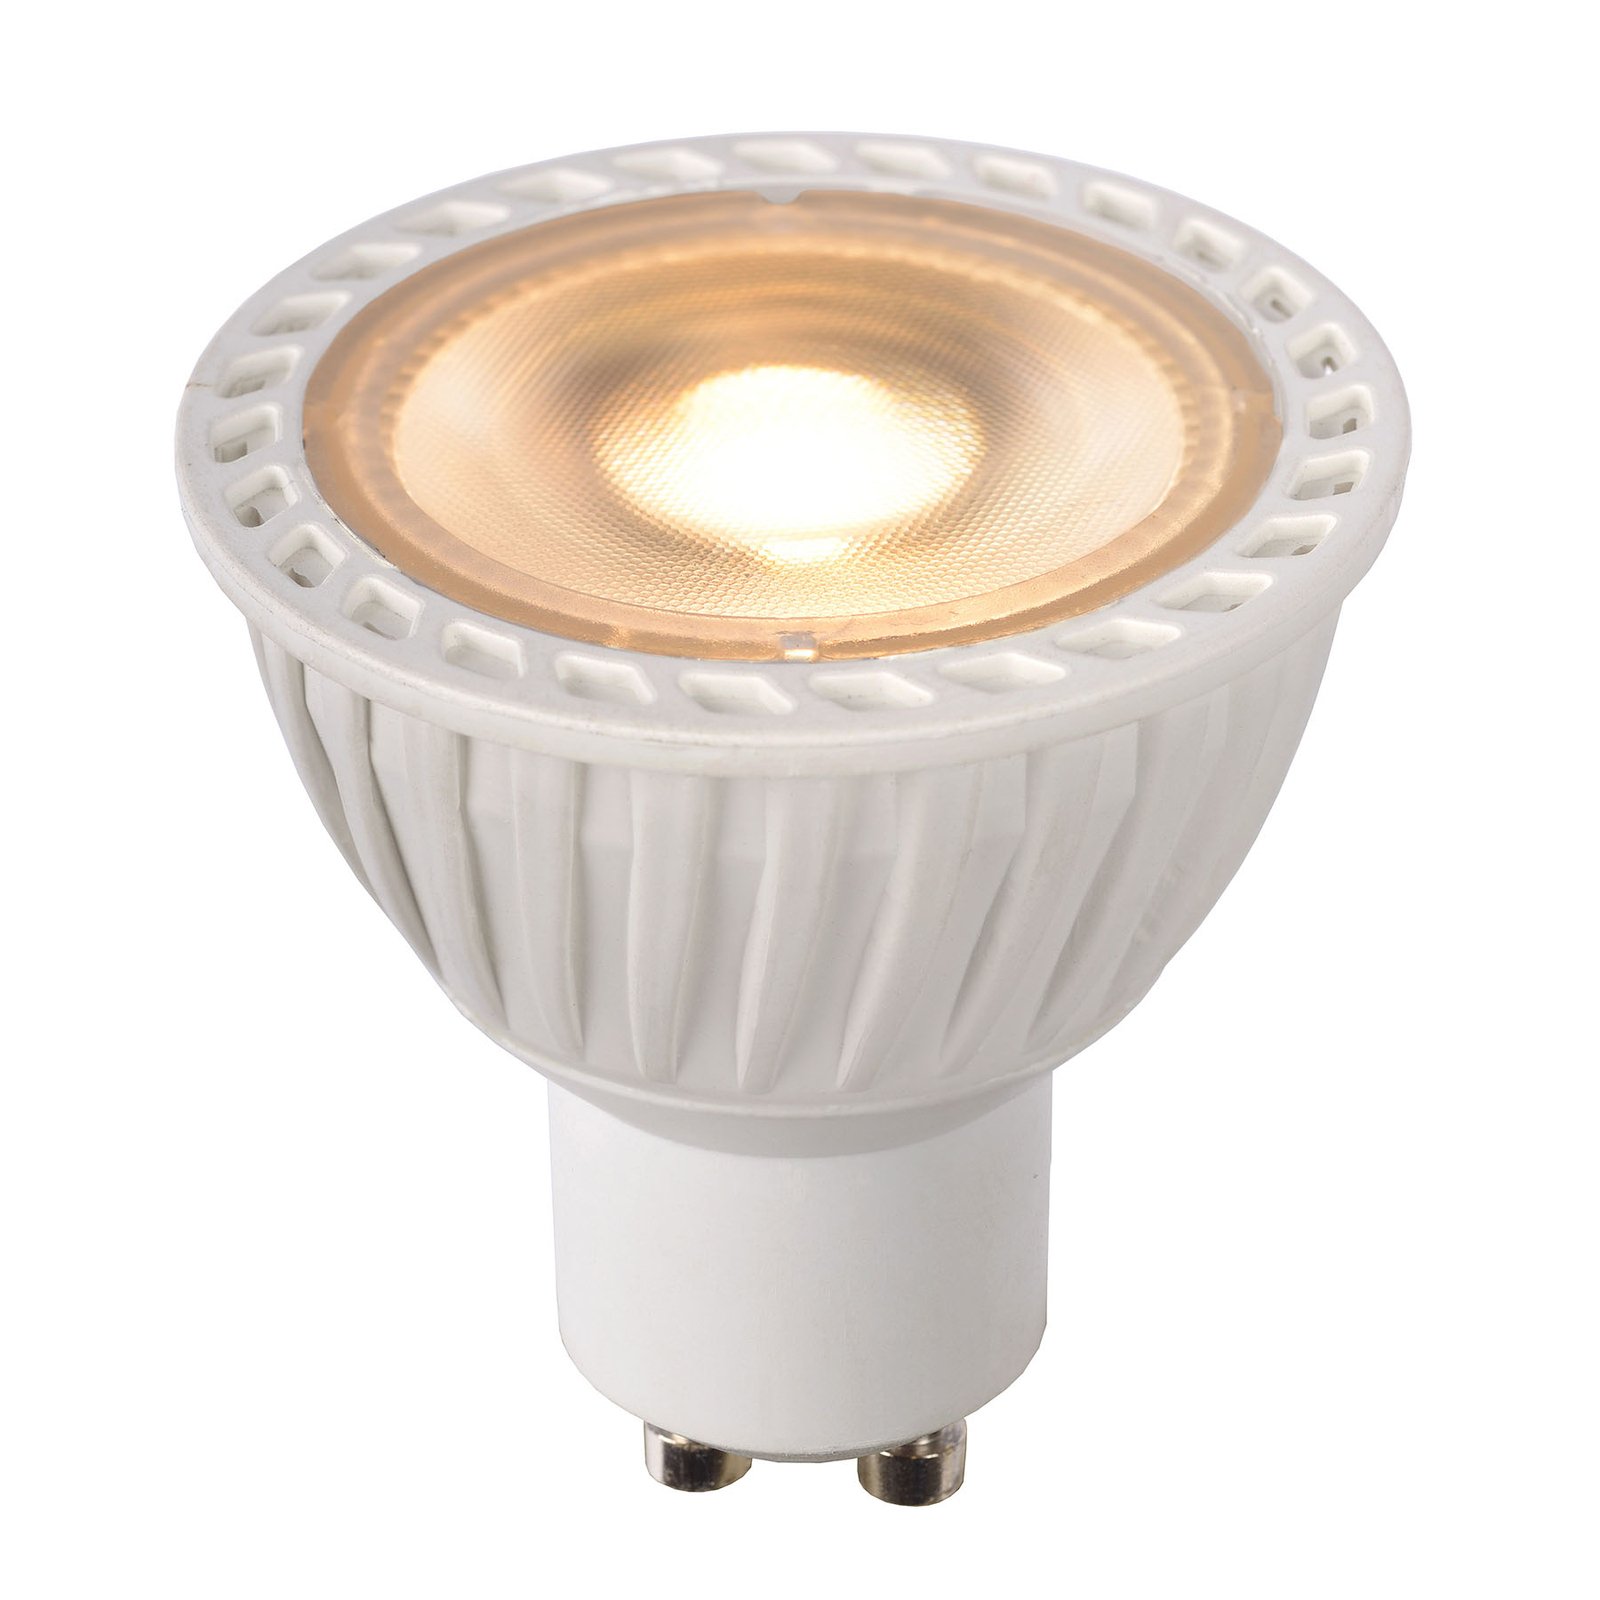 LED-reflektor GU10 5W dim to warm, vit